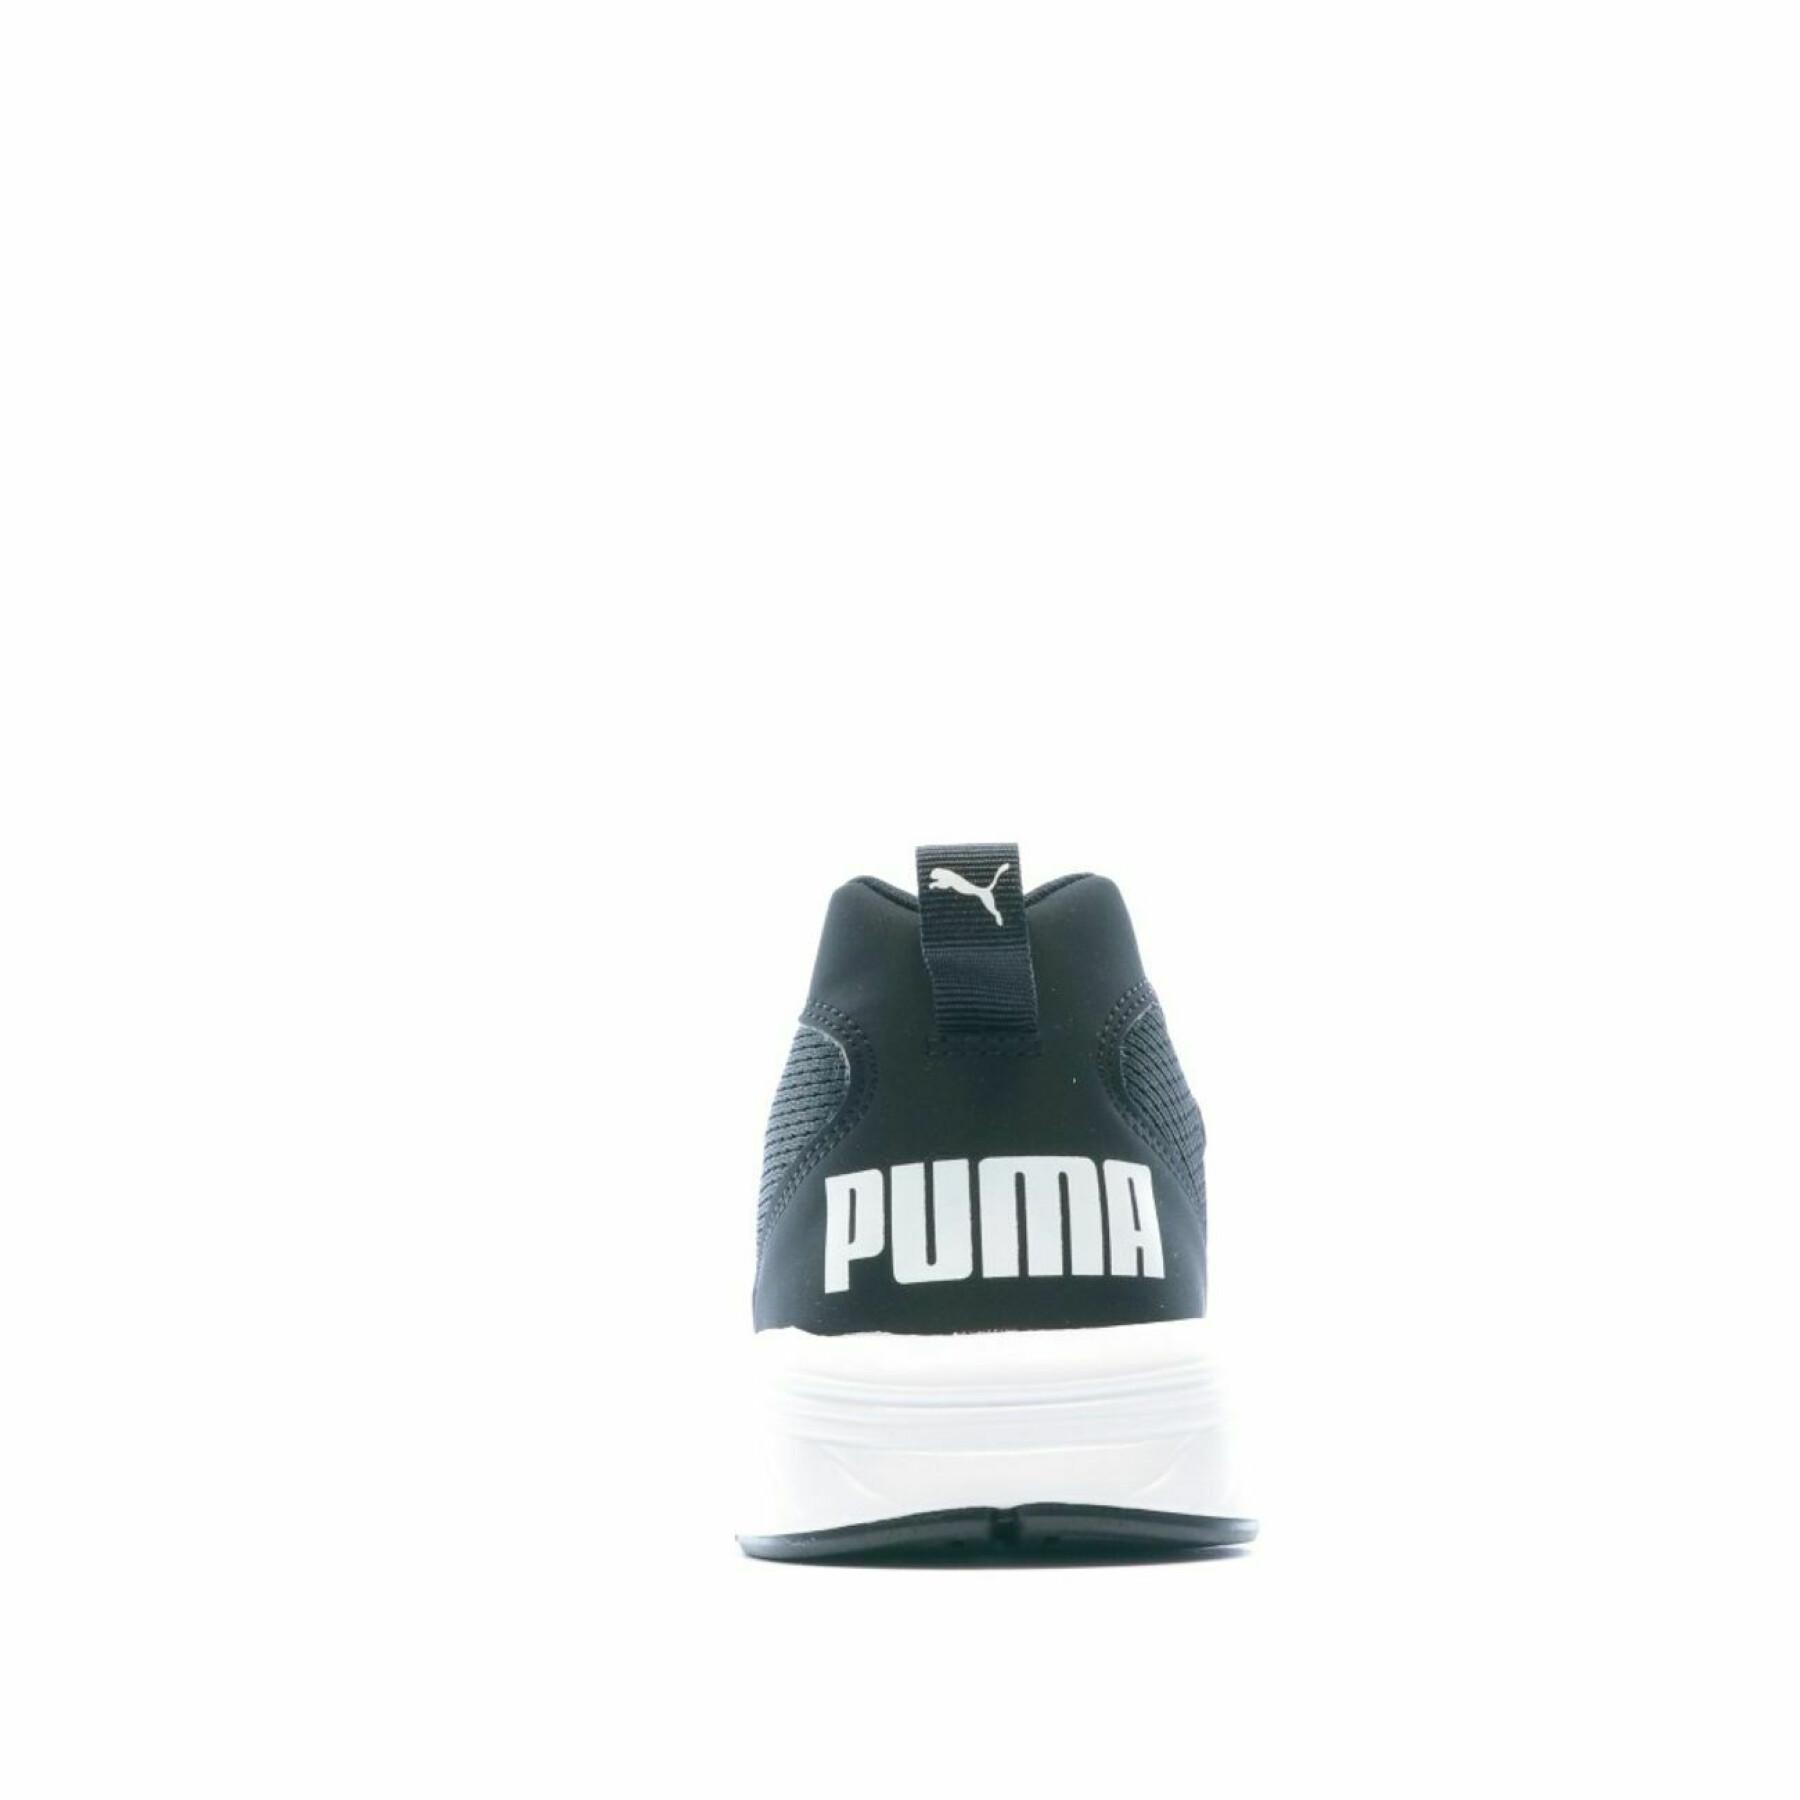 Schuhe Puma Nrgy rupture